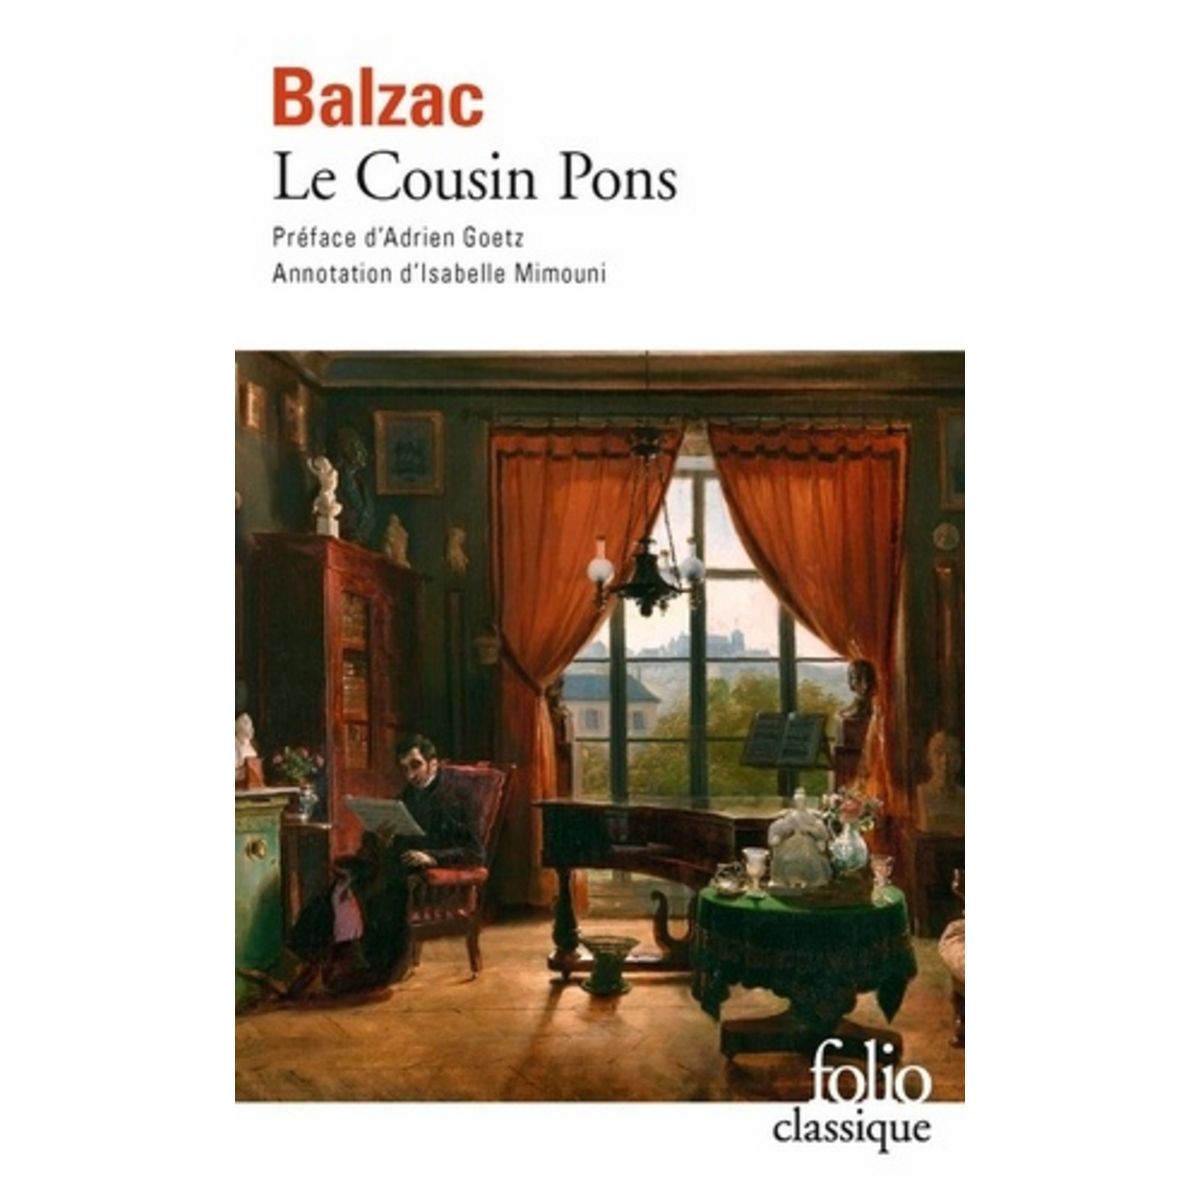  LE COUSIN PONS, Balzac Honoré de